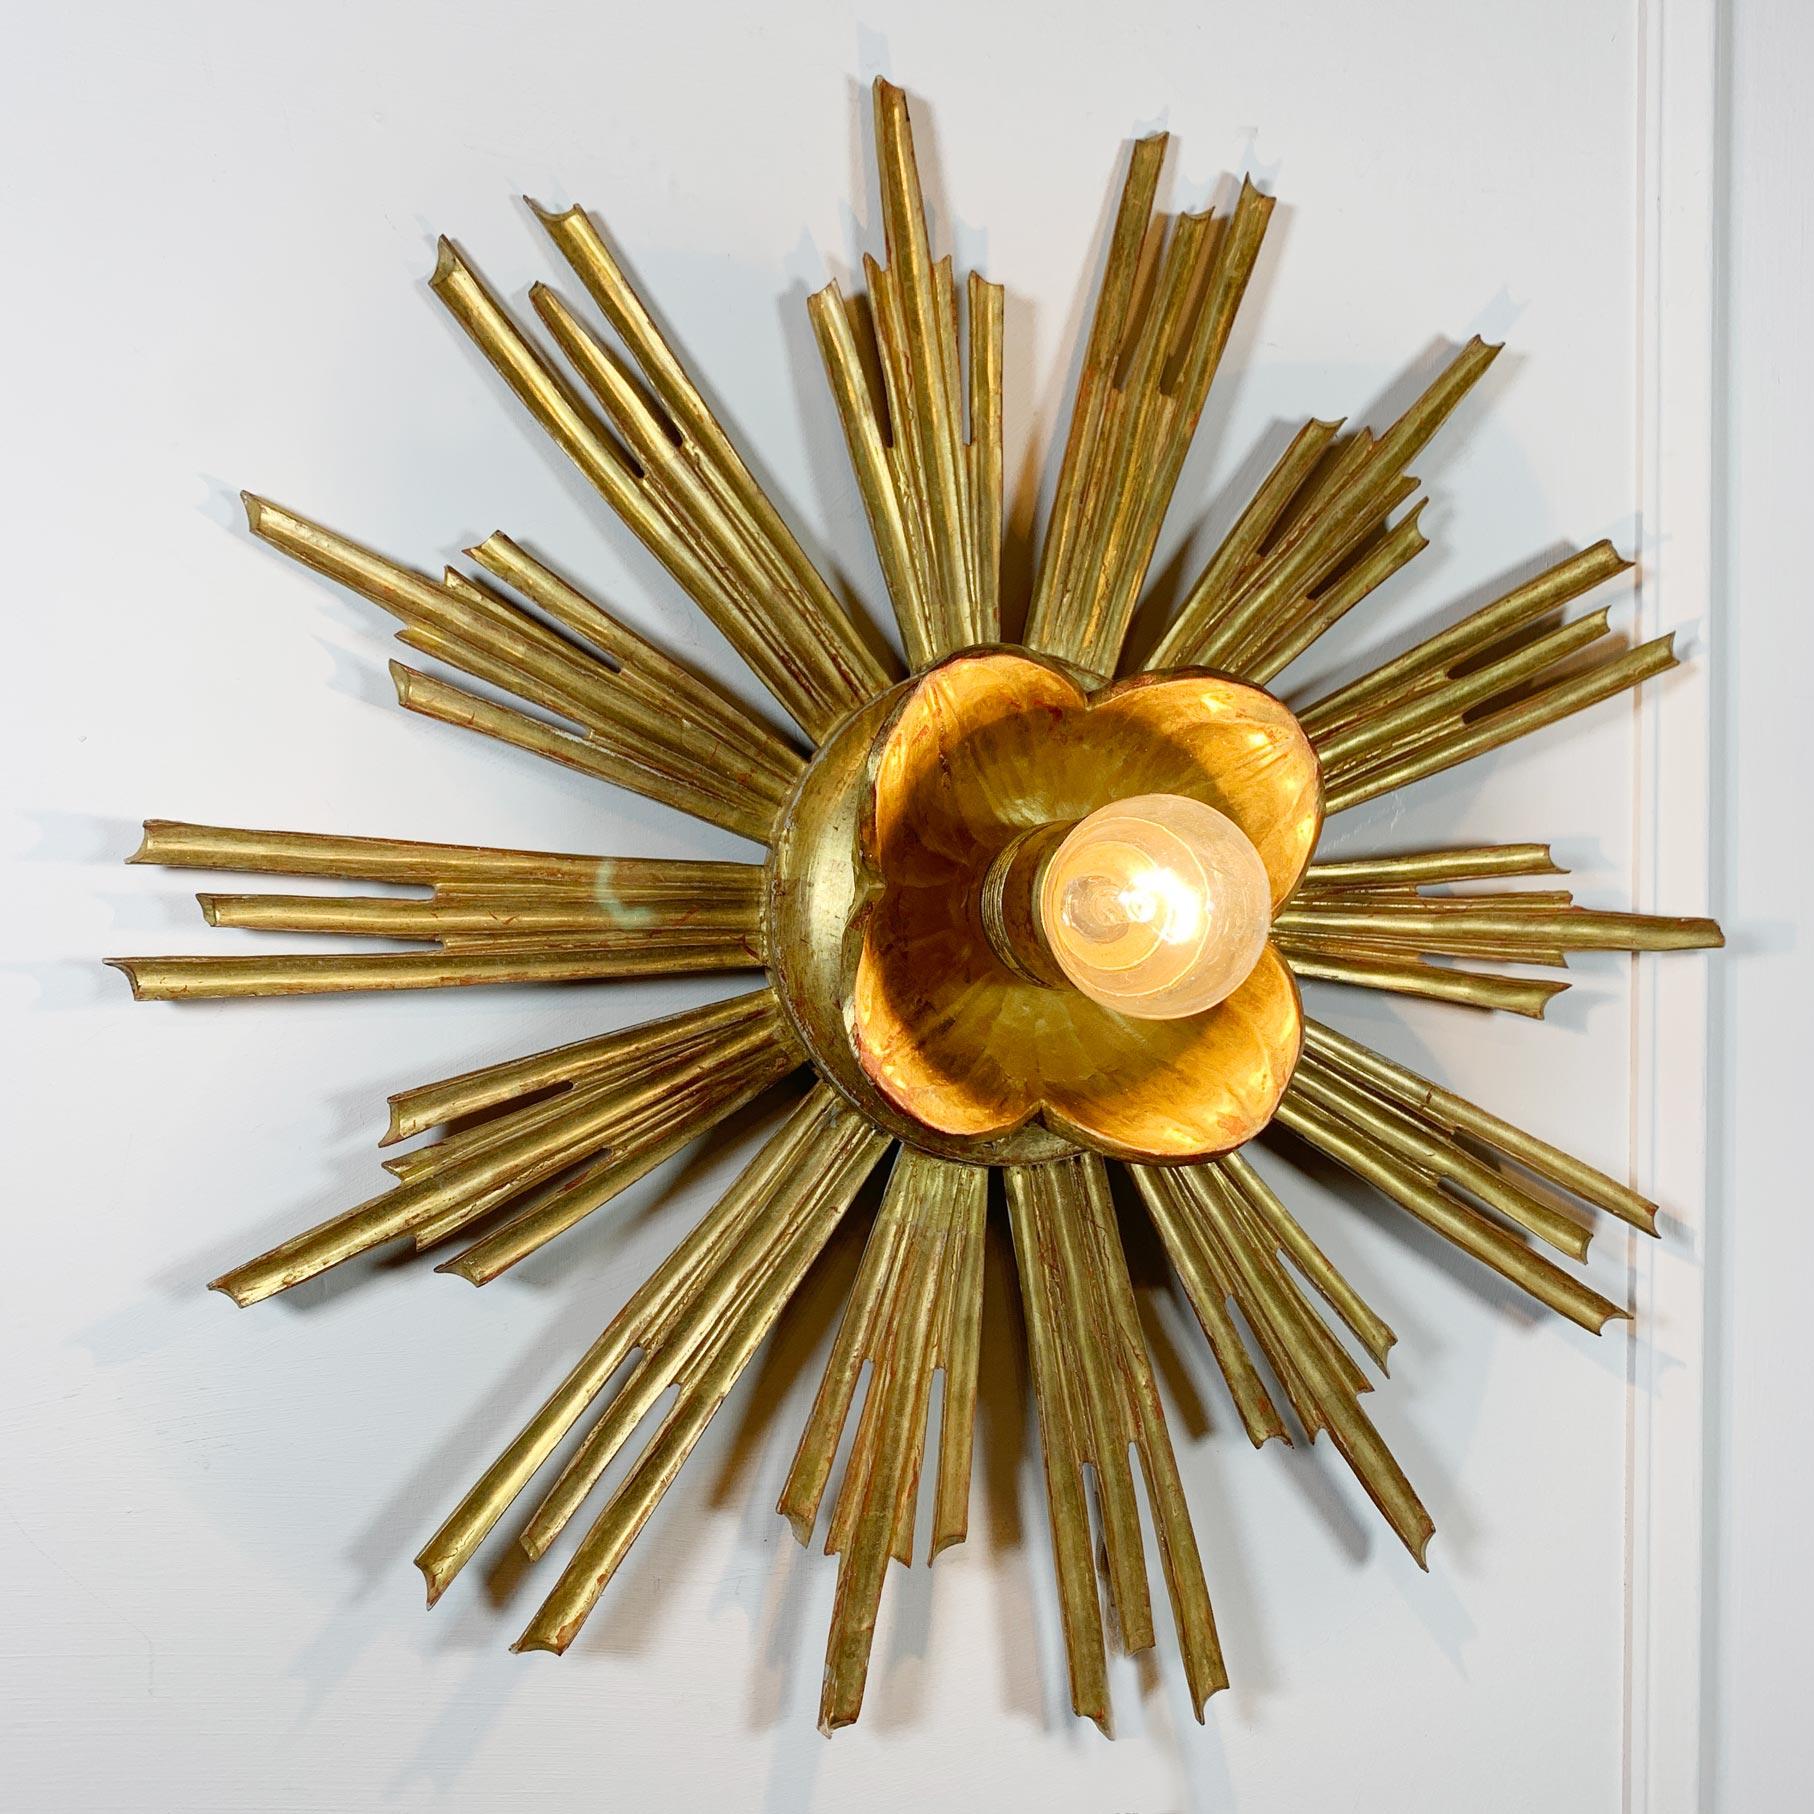 Lampe à encastrer en bois doré fabriquée à la main, italienne et datant des années 1950, la lampe contient une seule ampoule E27 (grande ampoule à vis).

Deux trous de fixation dans la rosace permettent de fixer le luminaire à l'aide de